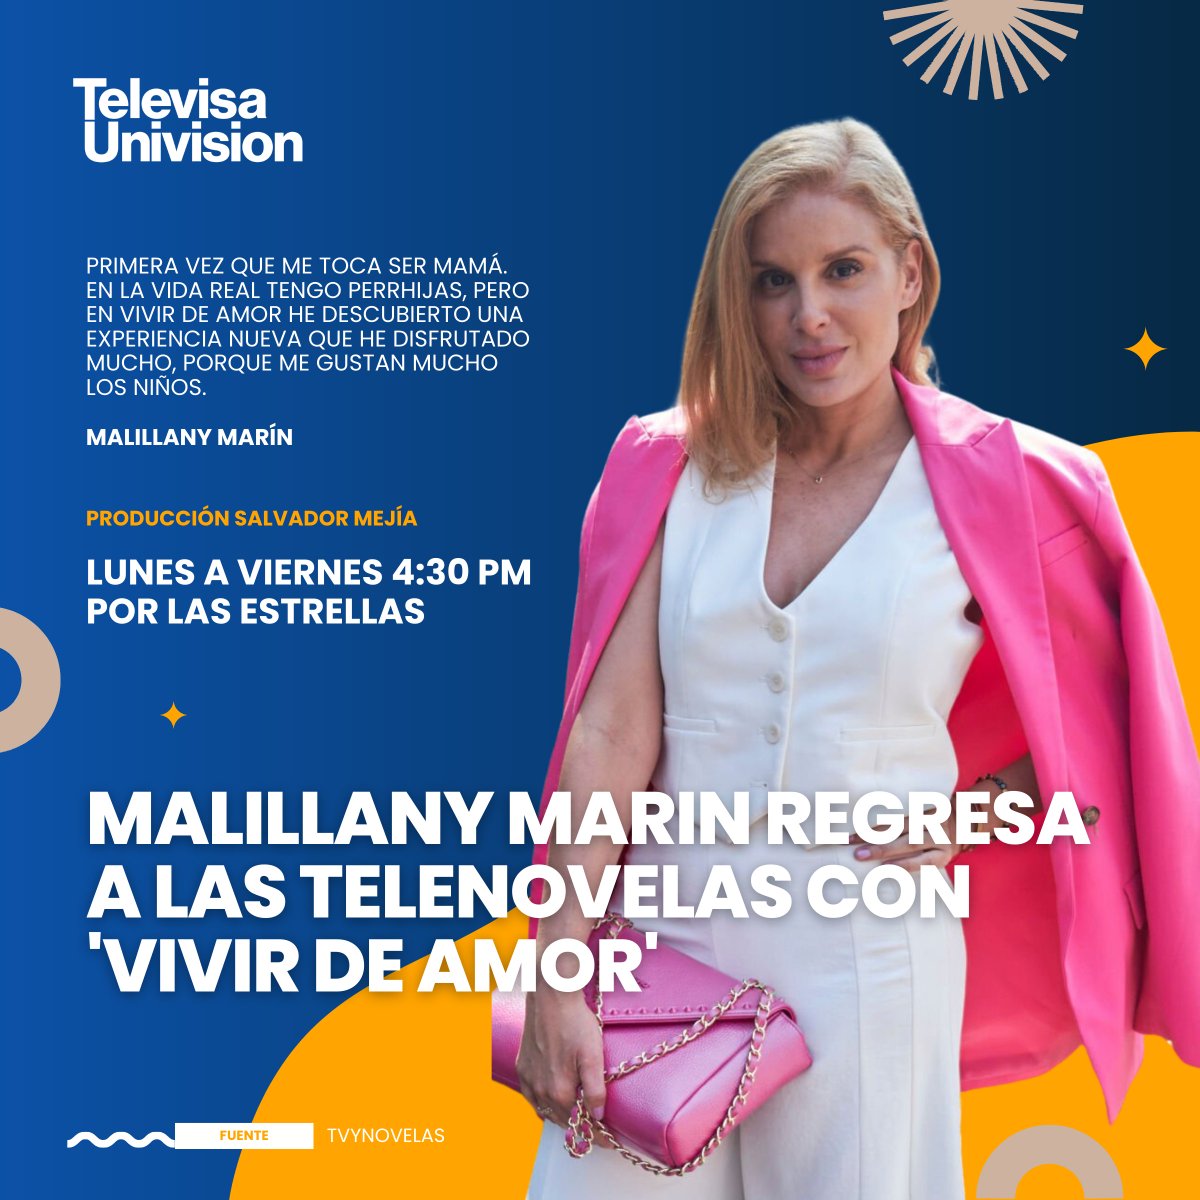 ¡Sorprendida! 😱 En su regreso a las telenovelas, Malillany Marin descubrió una faceta nueva en su carrera, esto nos contó 👇🏼